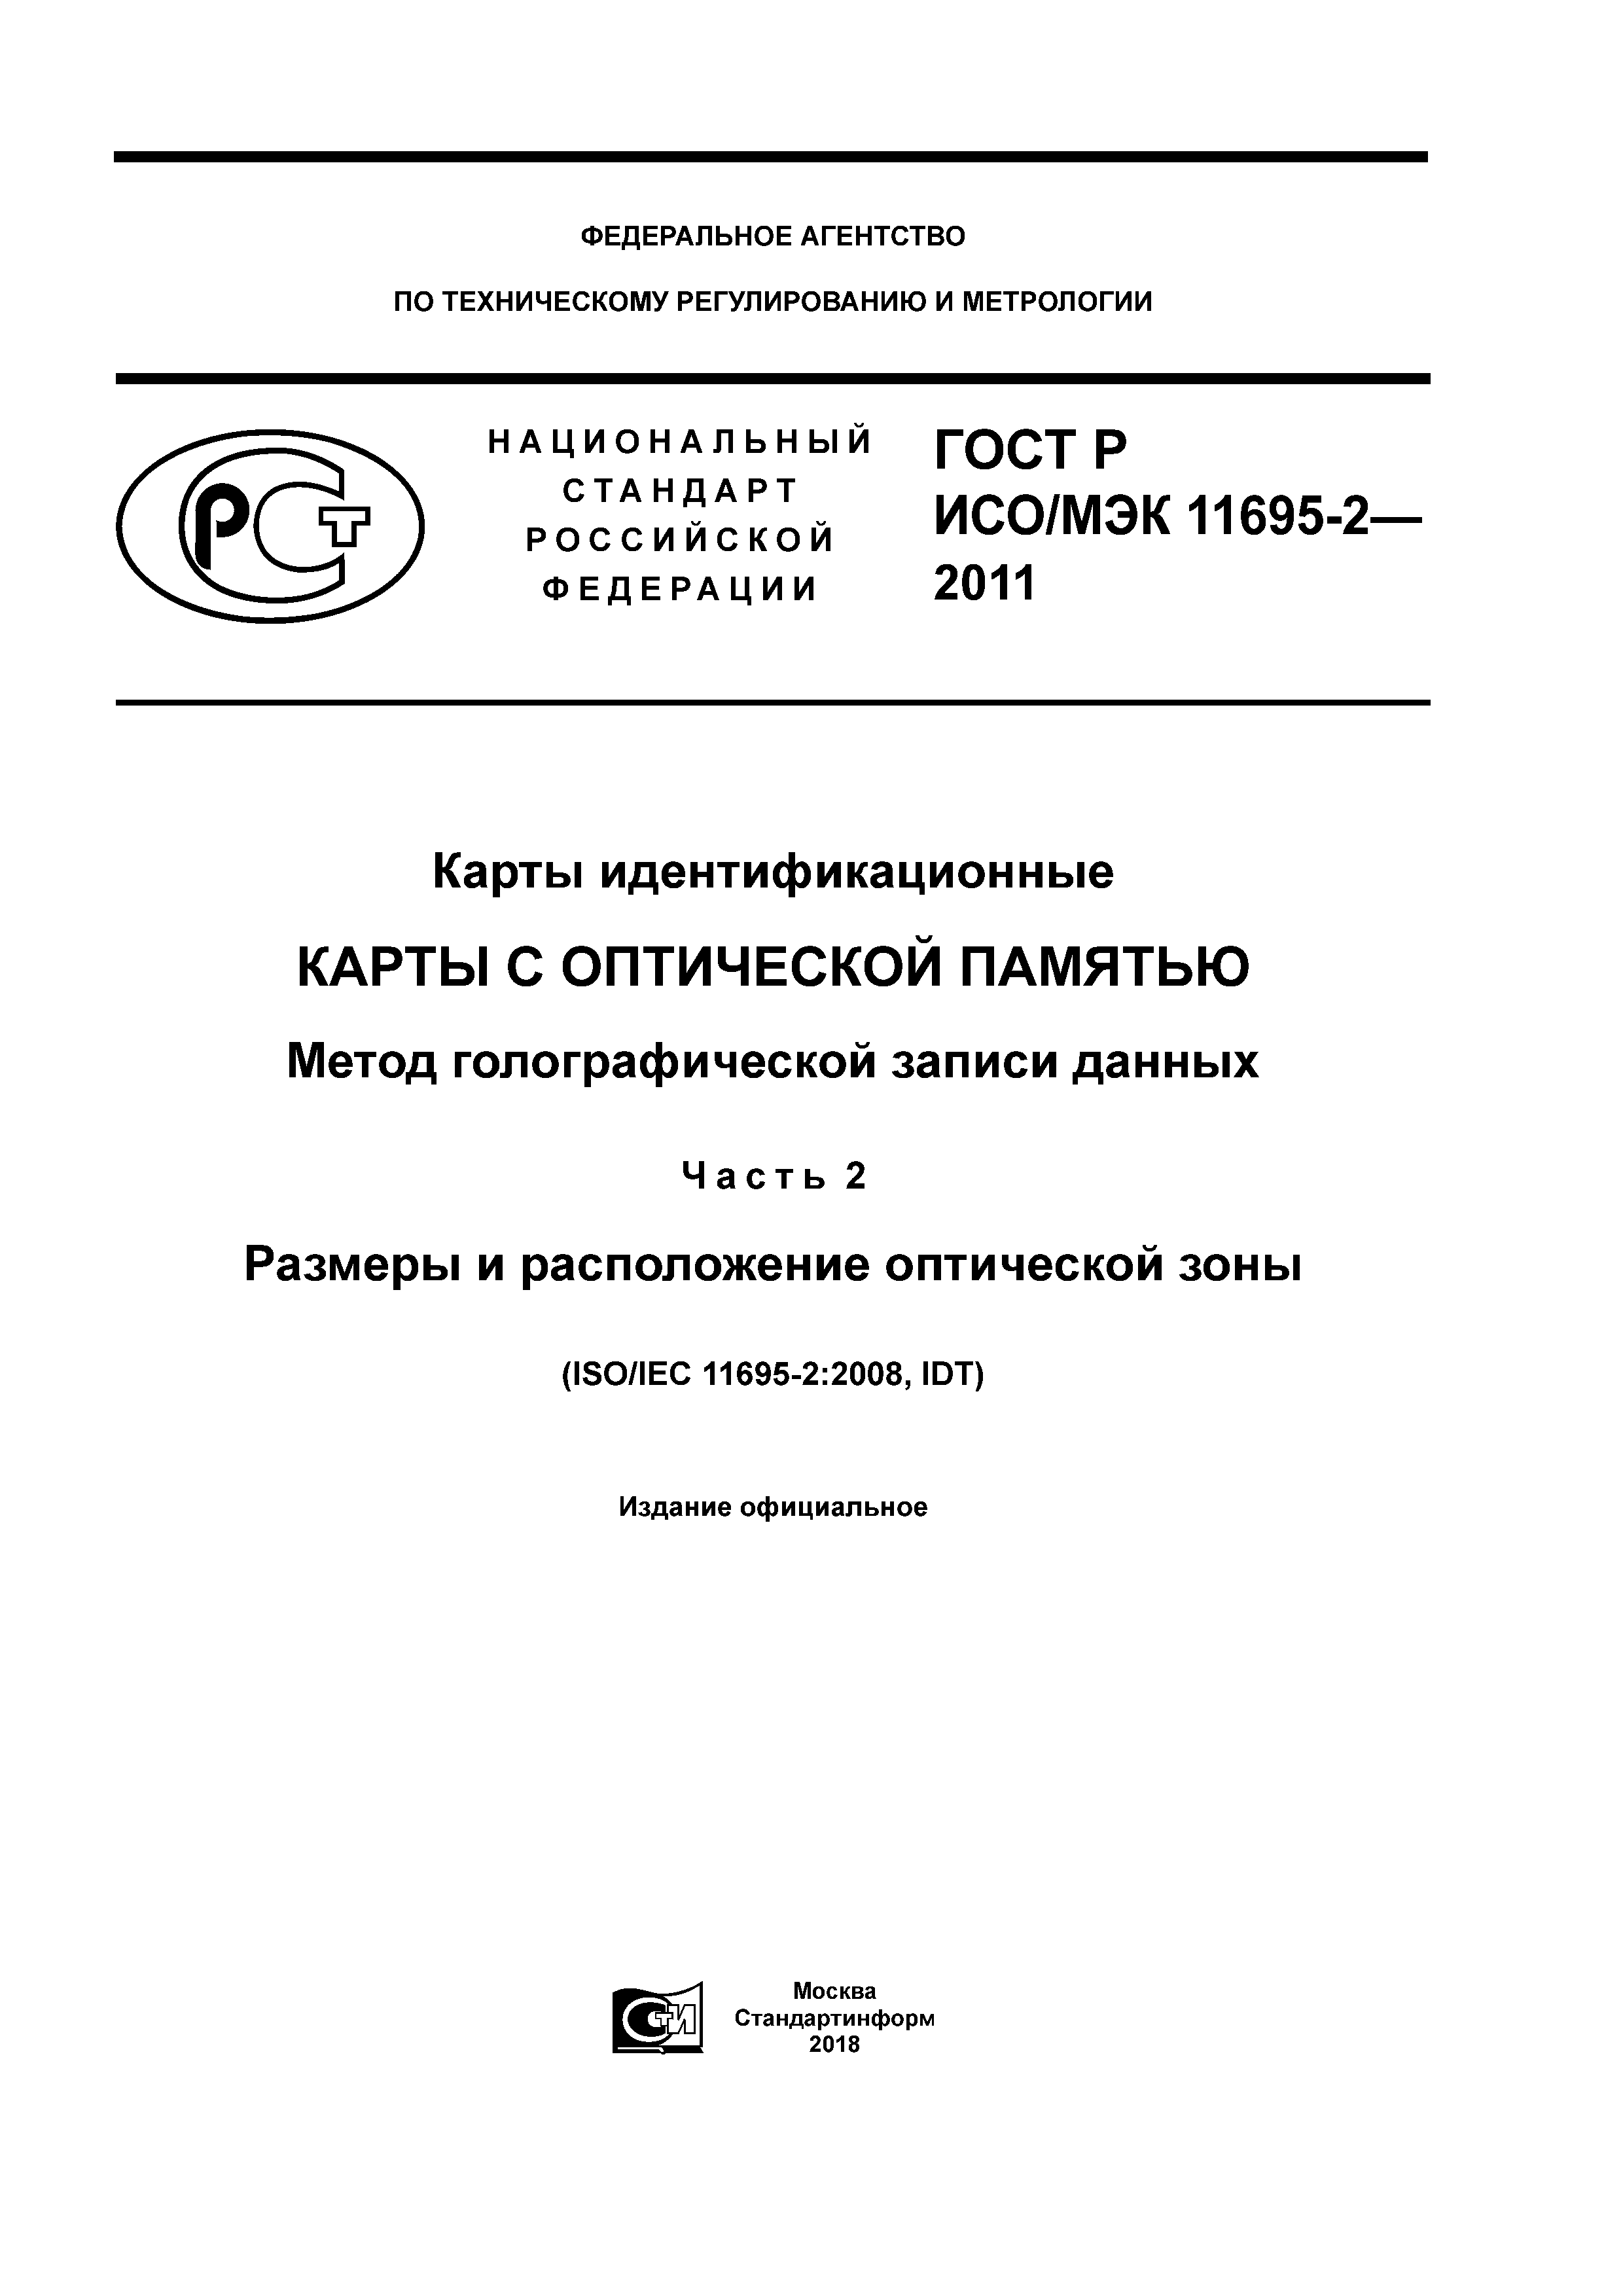 ГОСТ Р ИСО/МЭК 11695-2-2011